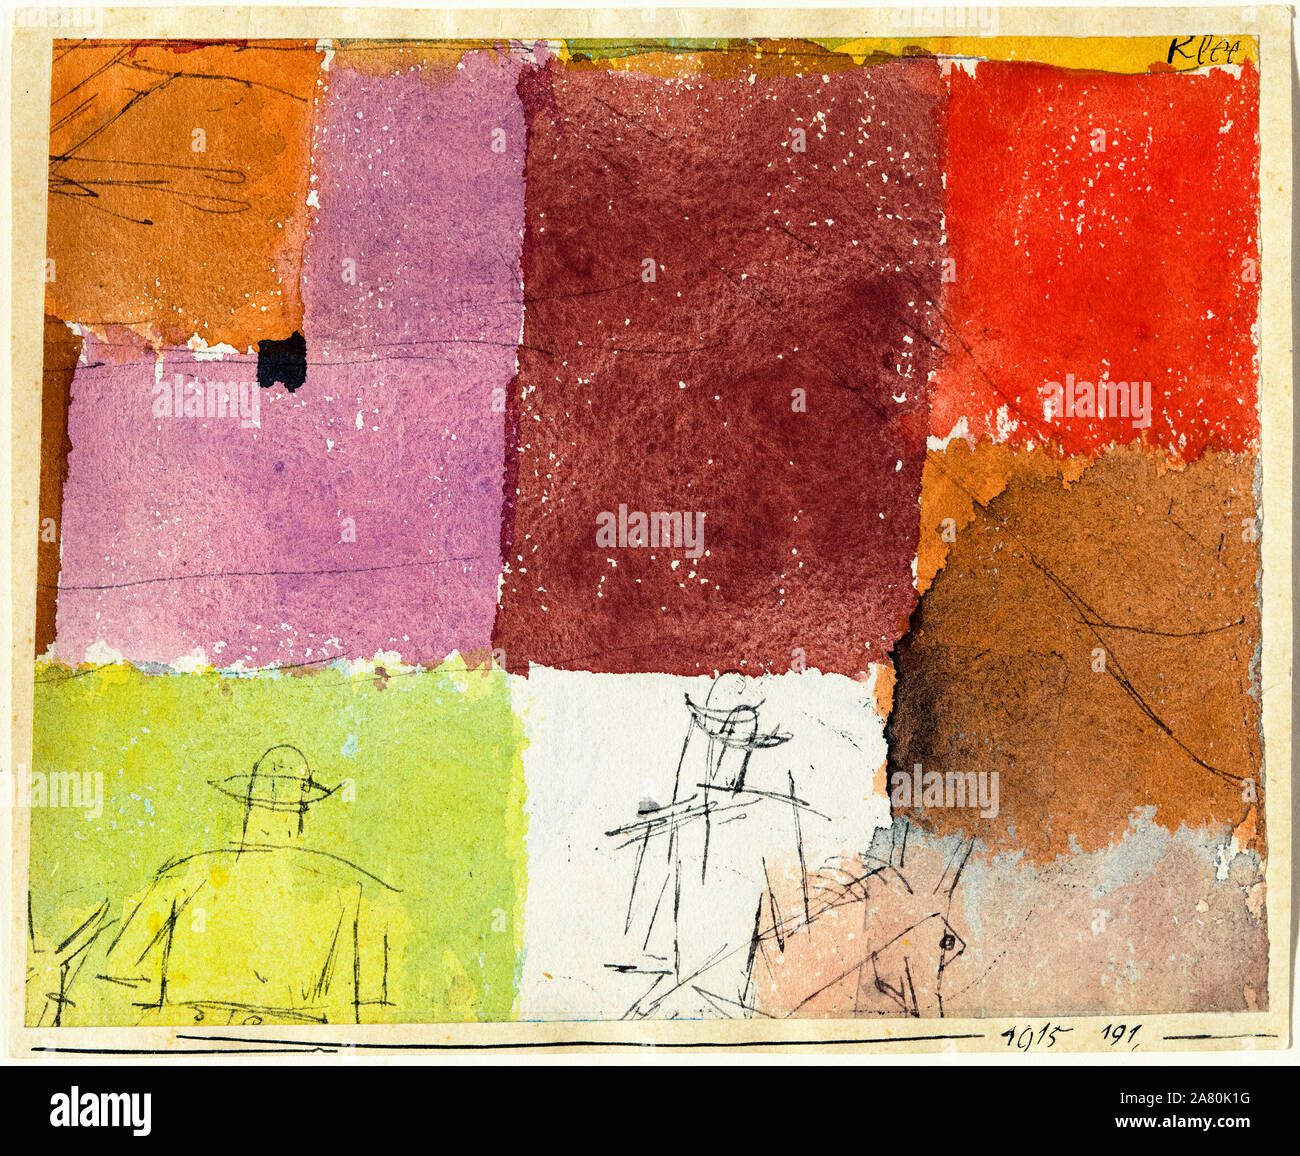 Paul Klee, la composition avec des chiffres, la peinture abstraite, 1915 Banque D'Images